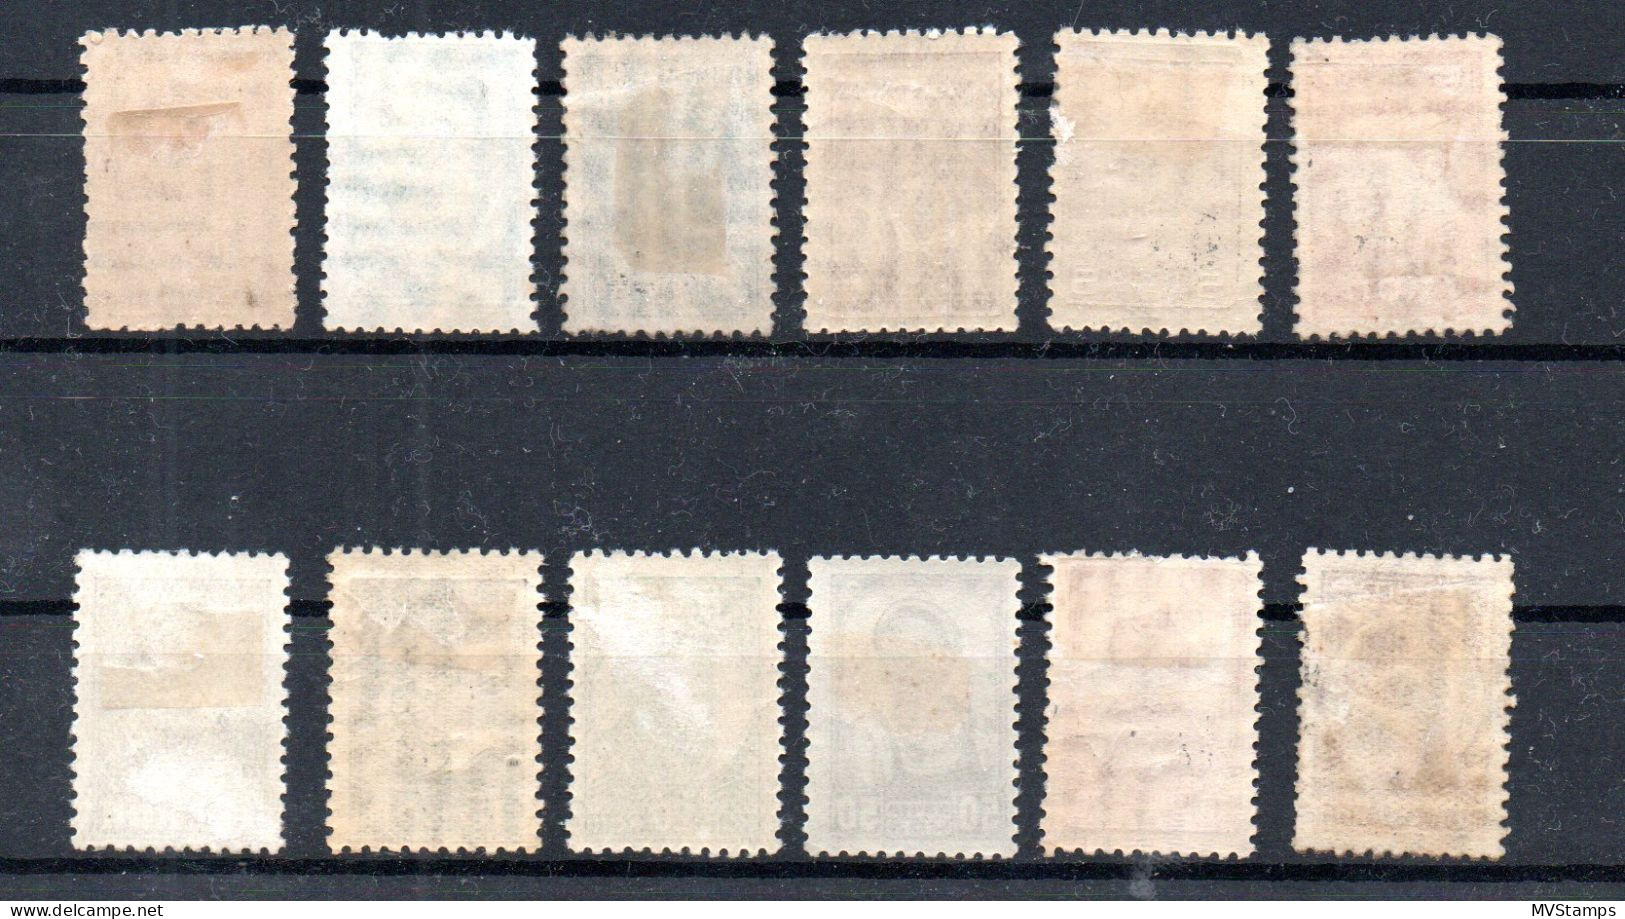 Russia 1929 Old Set Definitive Stamps (Michel 365/73+375/77) MLH - Ongebruikt